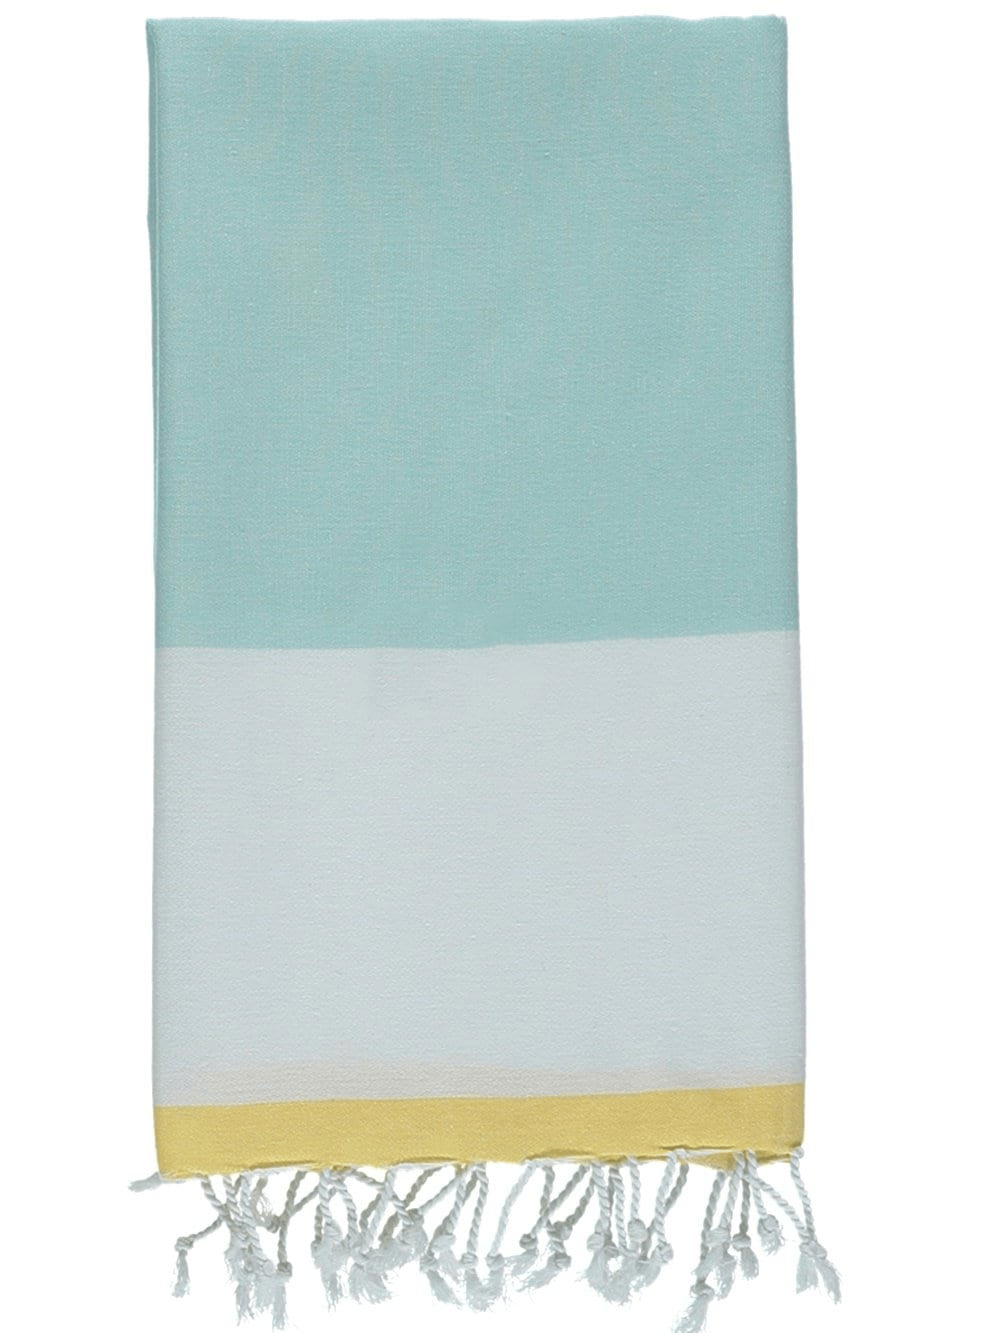 Savona Turkish Towels - The Riviera Towel Company